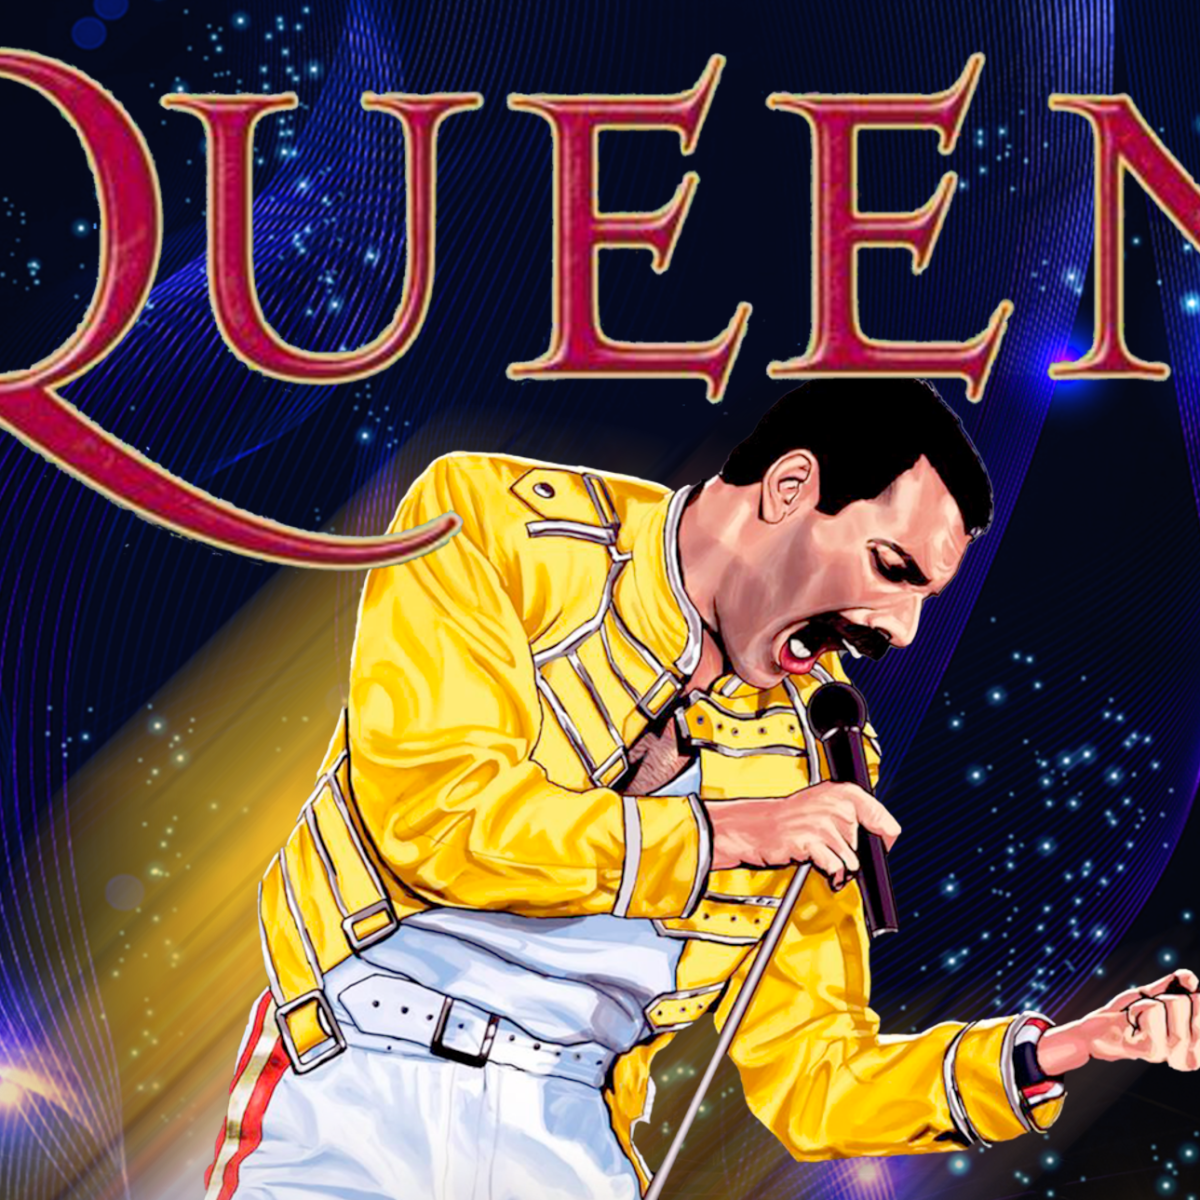 La música de Queen llega al Movistar Arena de Bogotá con un gran homenaje